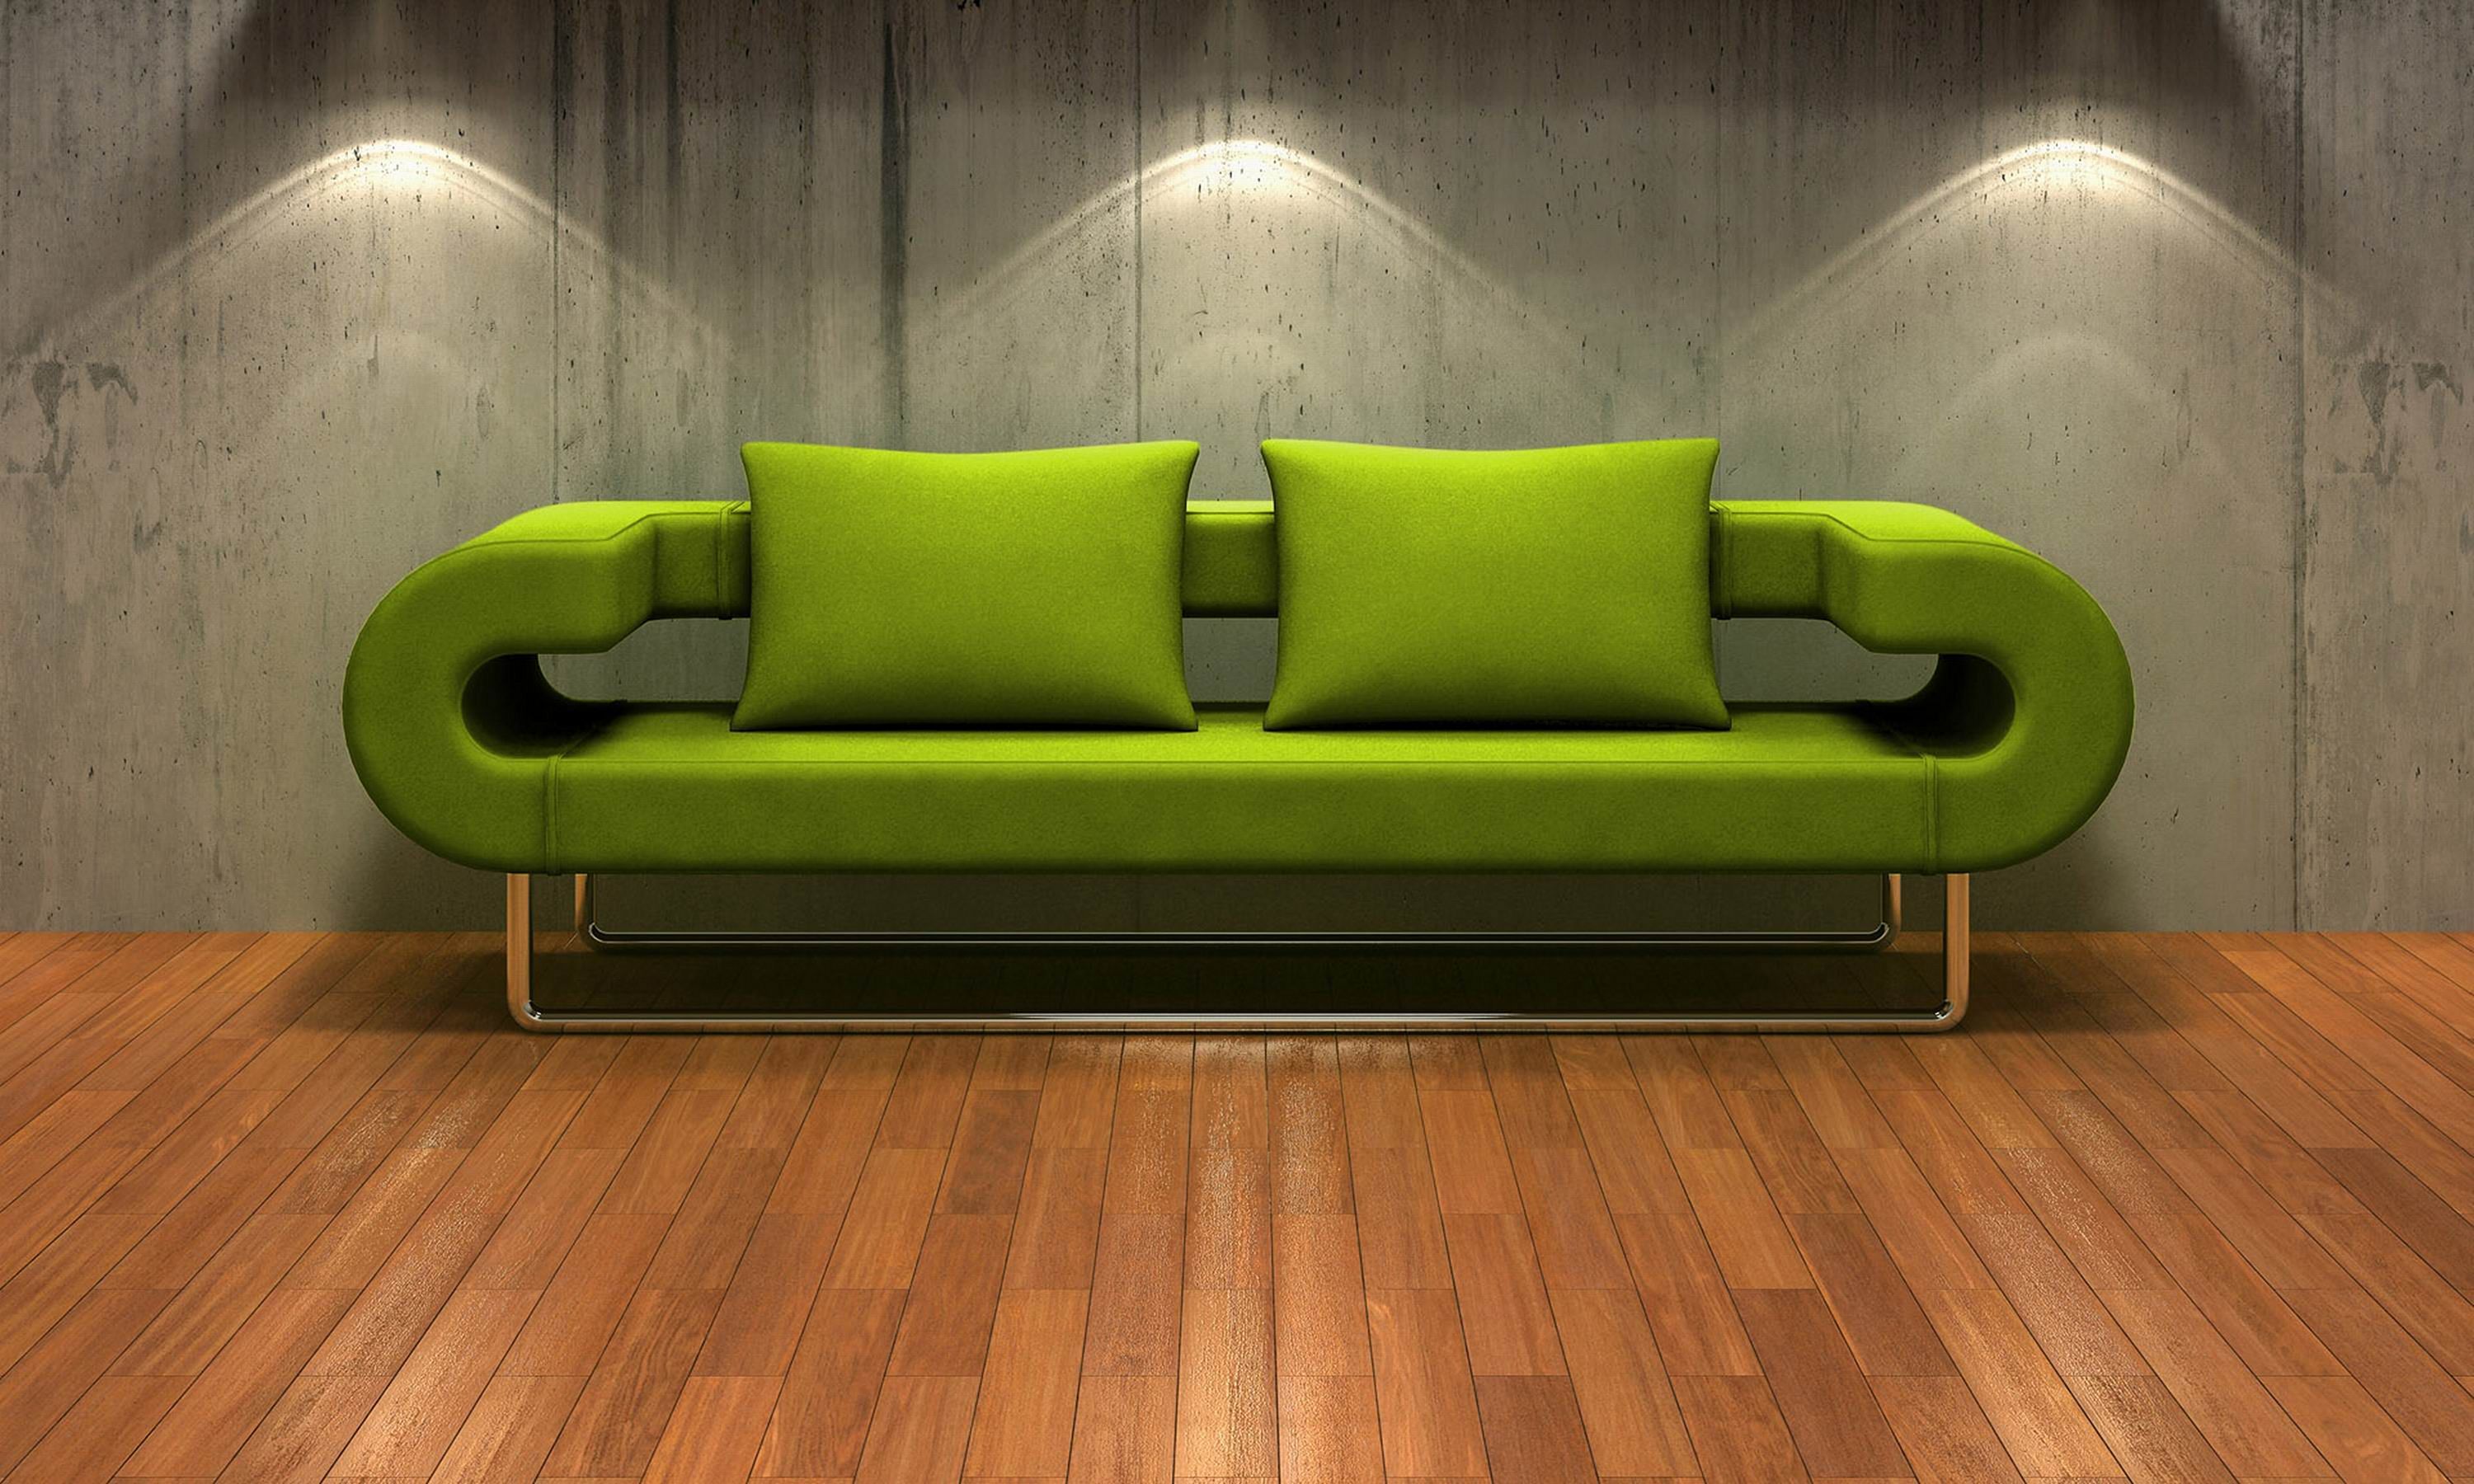 papier peint inhabituel pour le salon,vert,meubles,canapé,revêtement de sol stratifié,sol